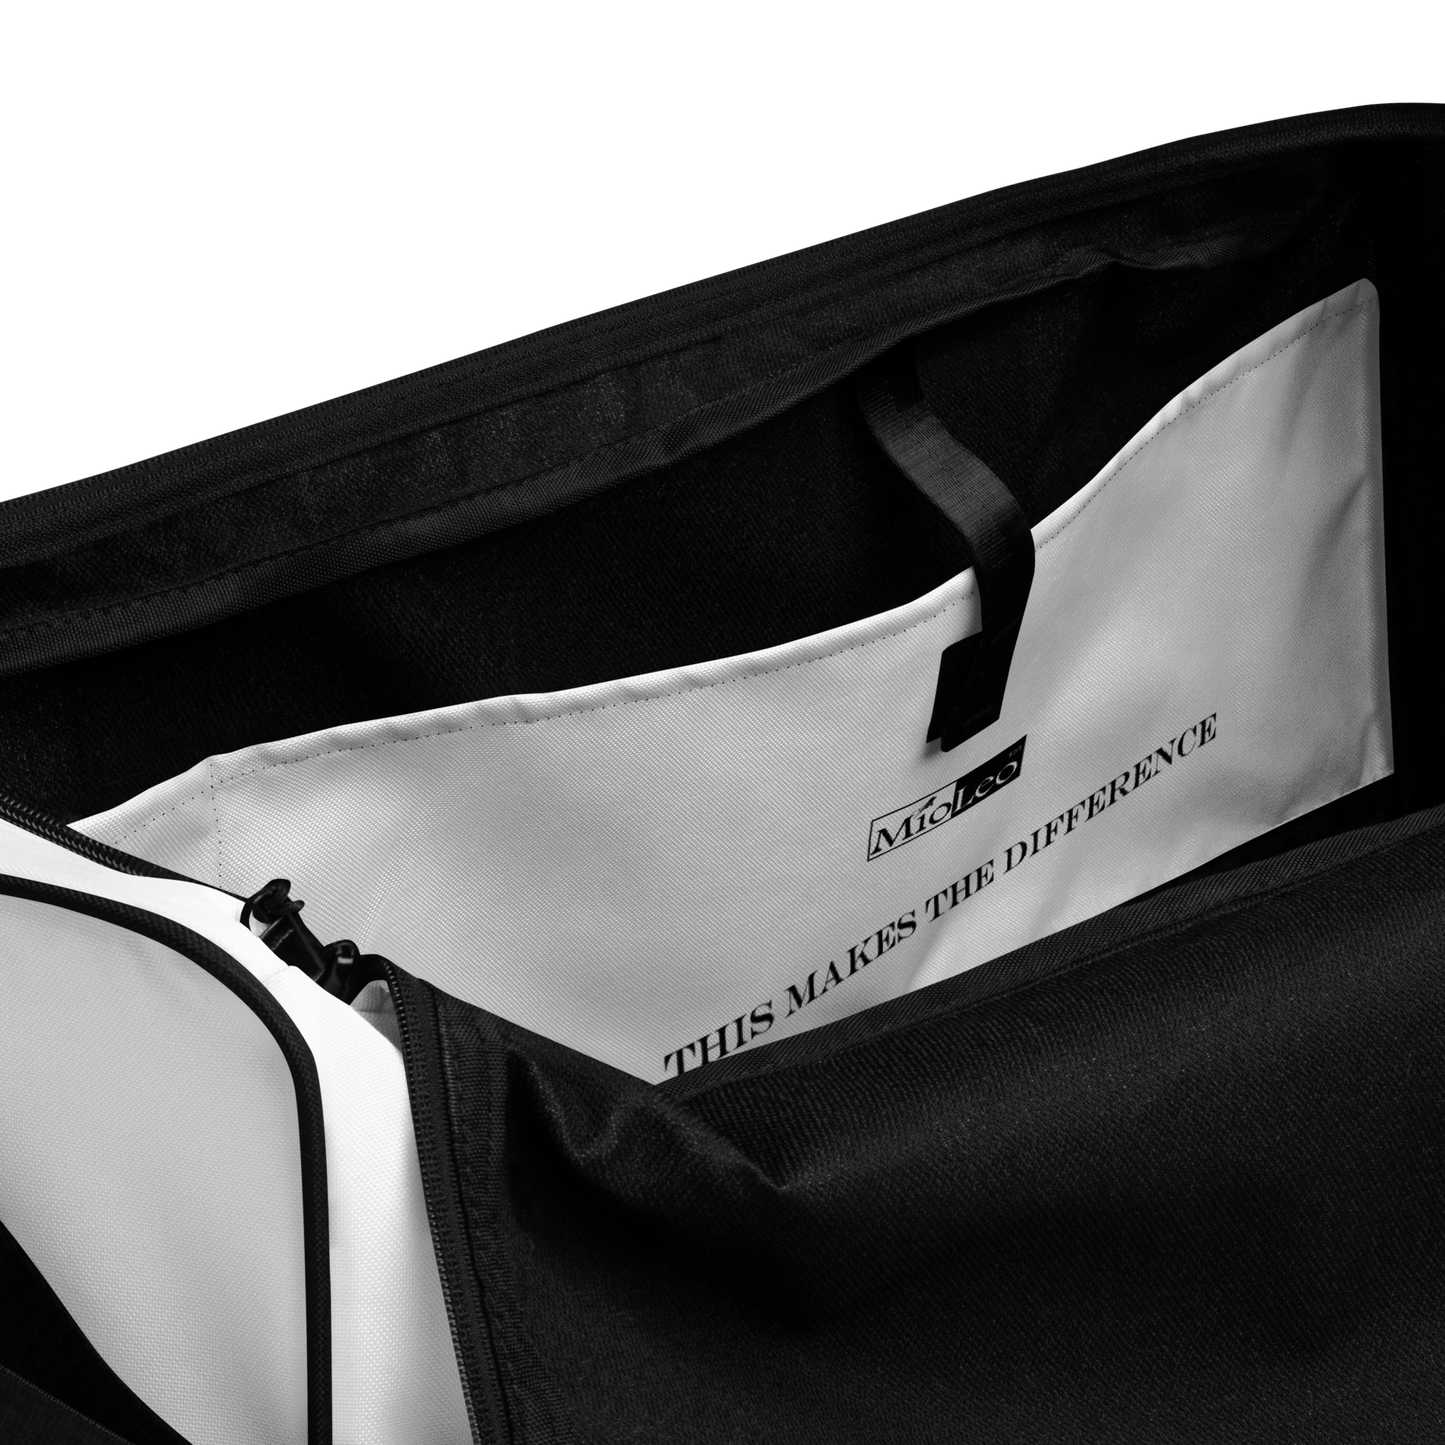 Duffle-Bag White-Line No.802 „unlimited“ von MioLeo